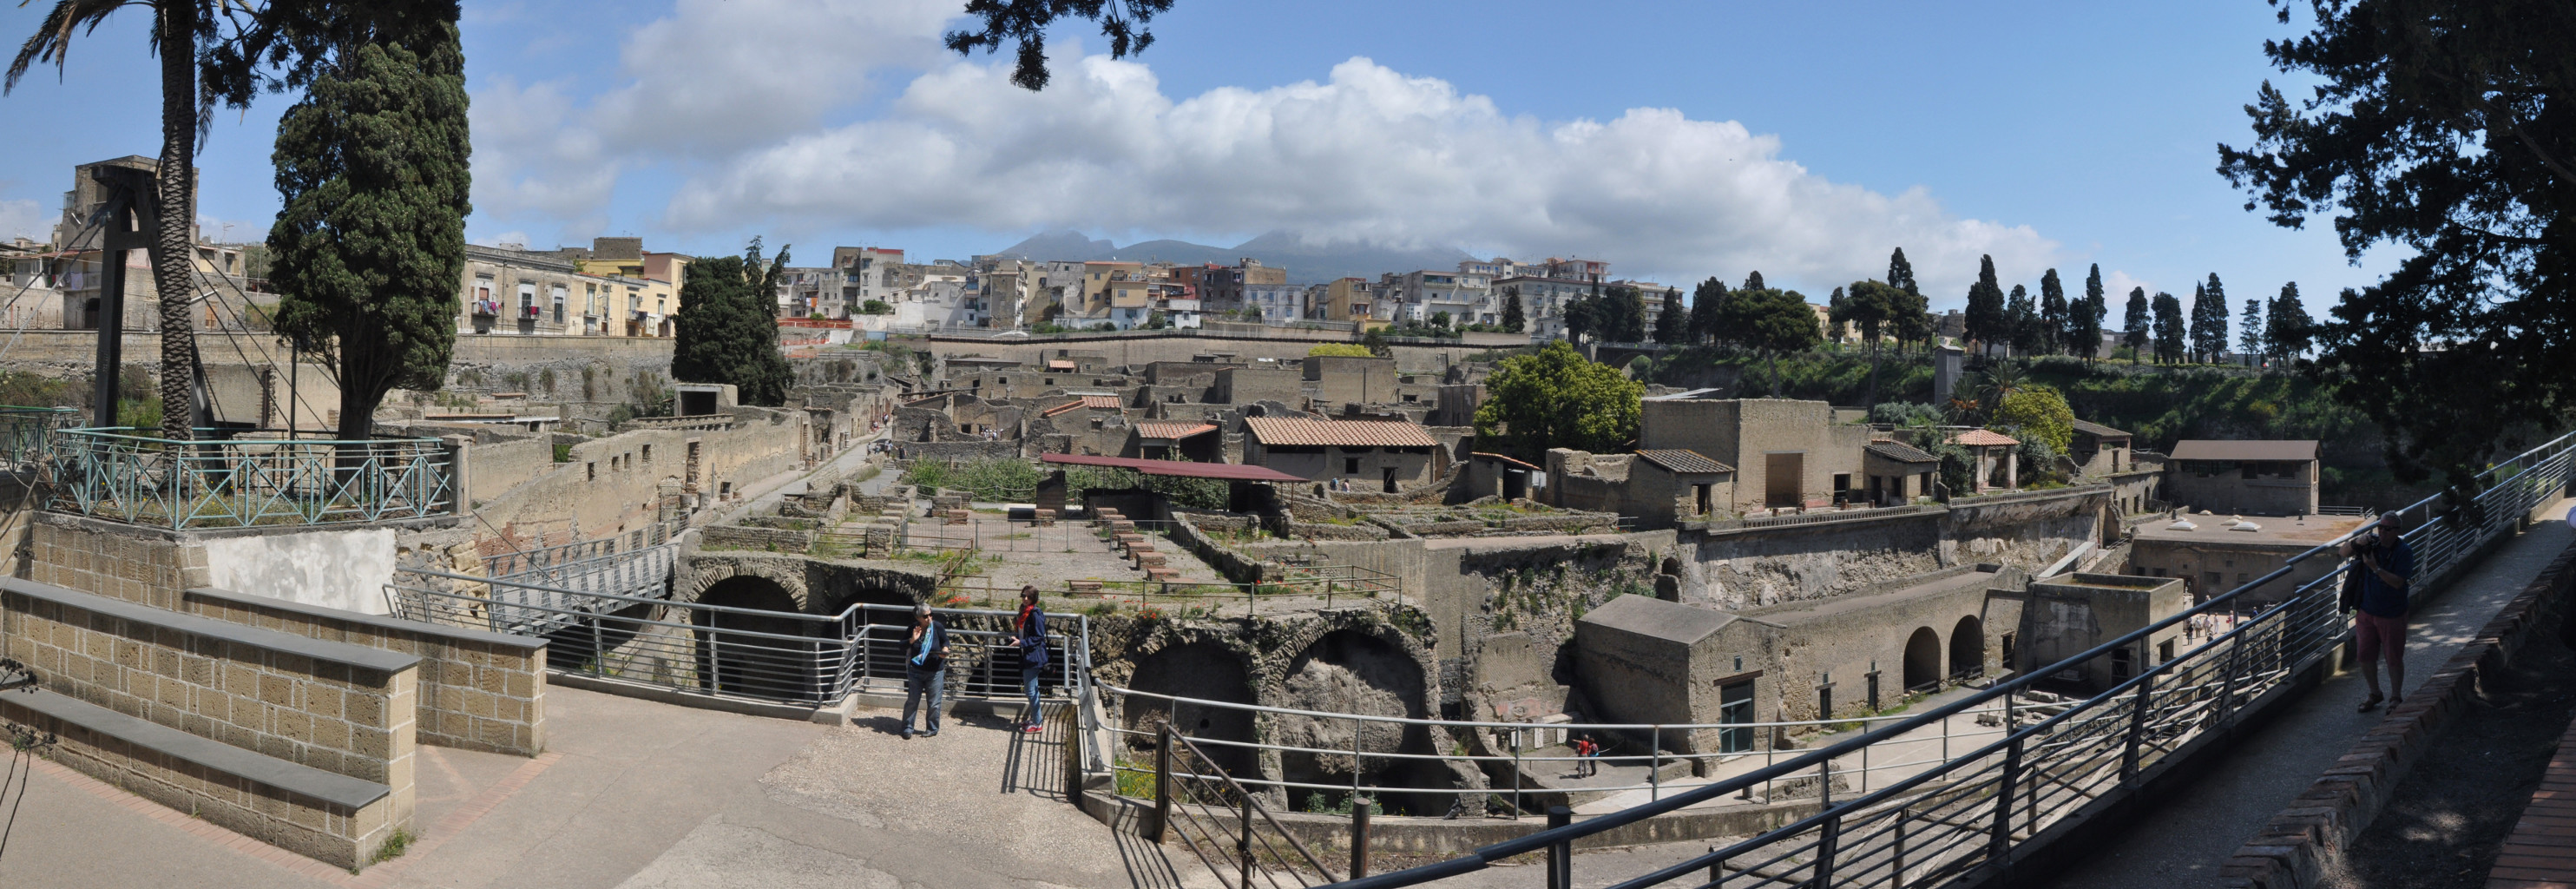 Das Grabungsgelände von Herculaneum, bis zu 20 m tief verschüttete der Vulkan die römische Siedlung